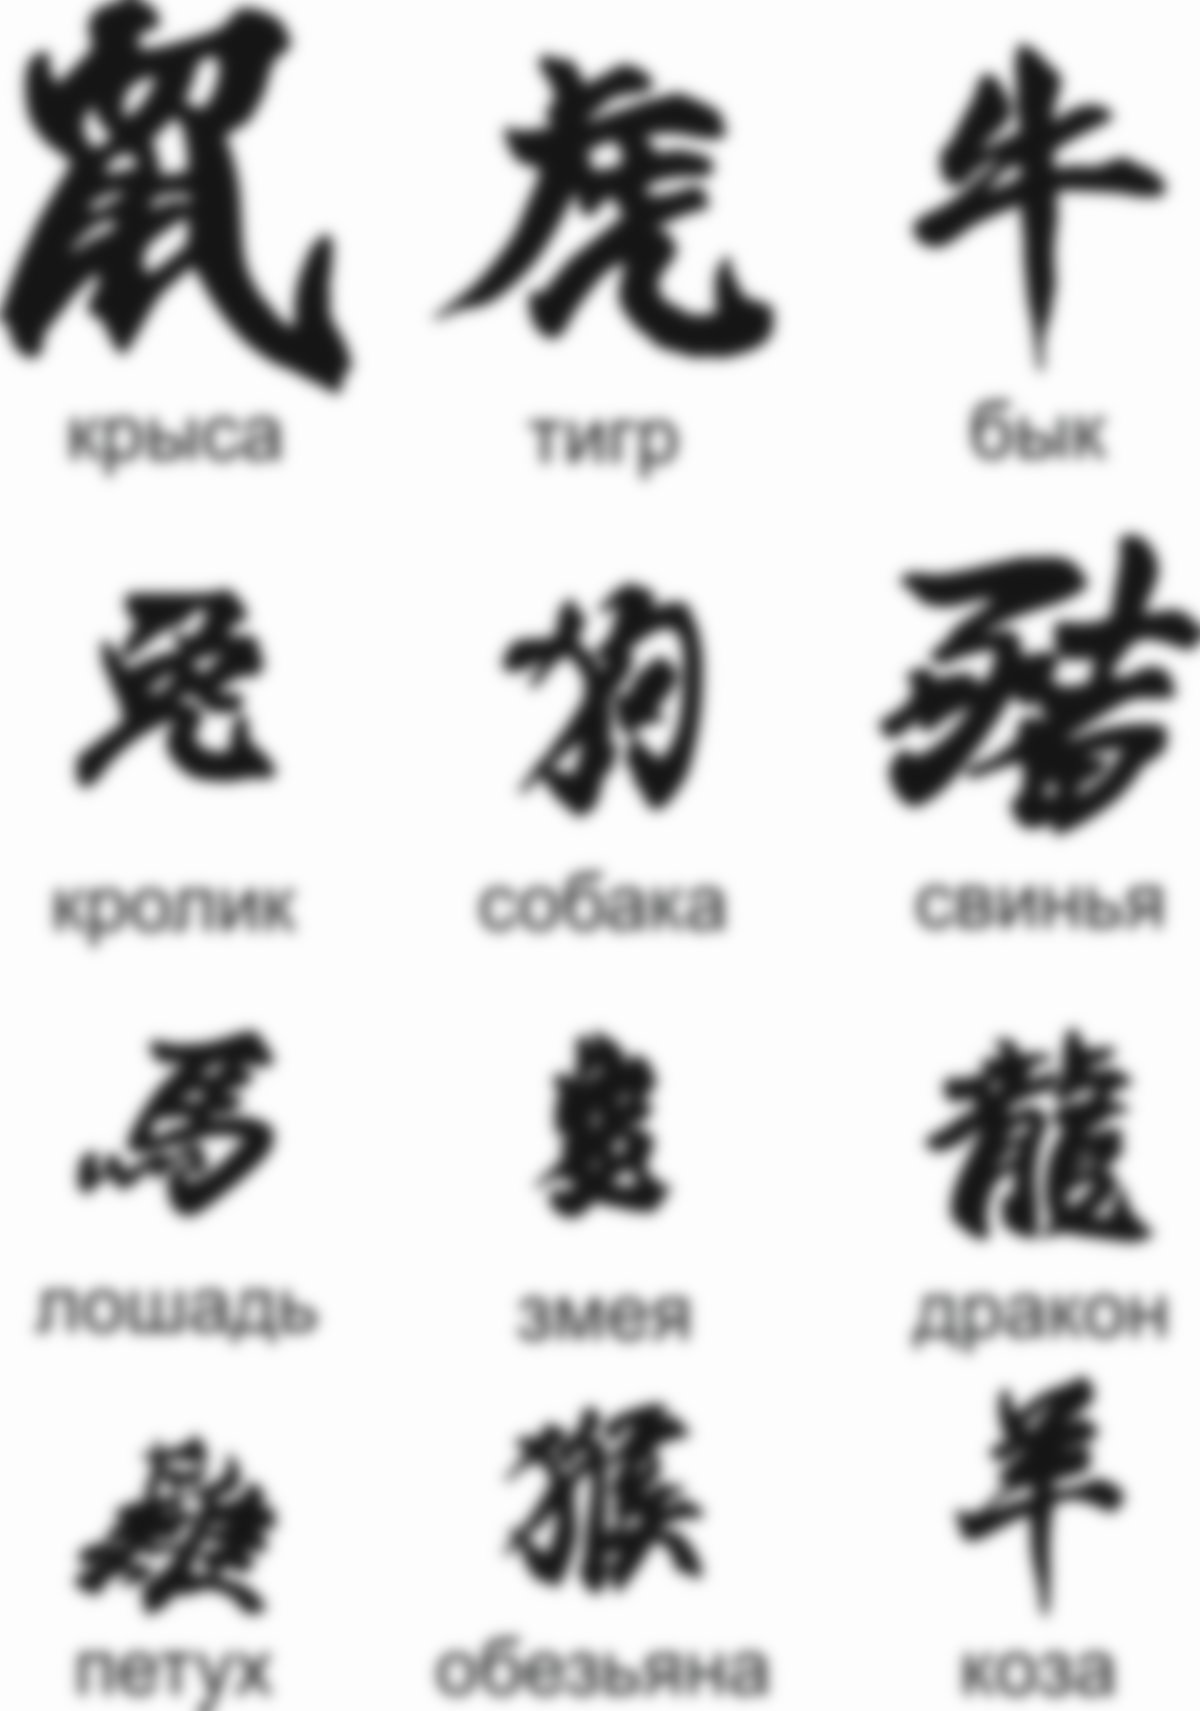 татуировка китайские иероглифы и их значение